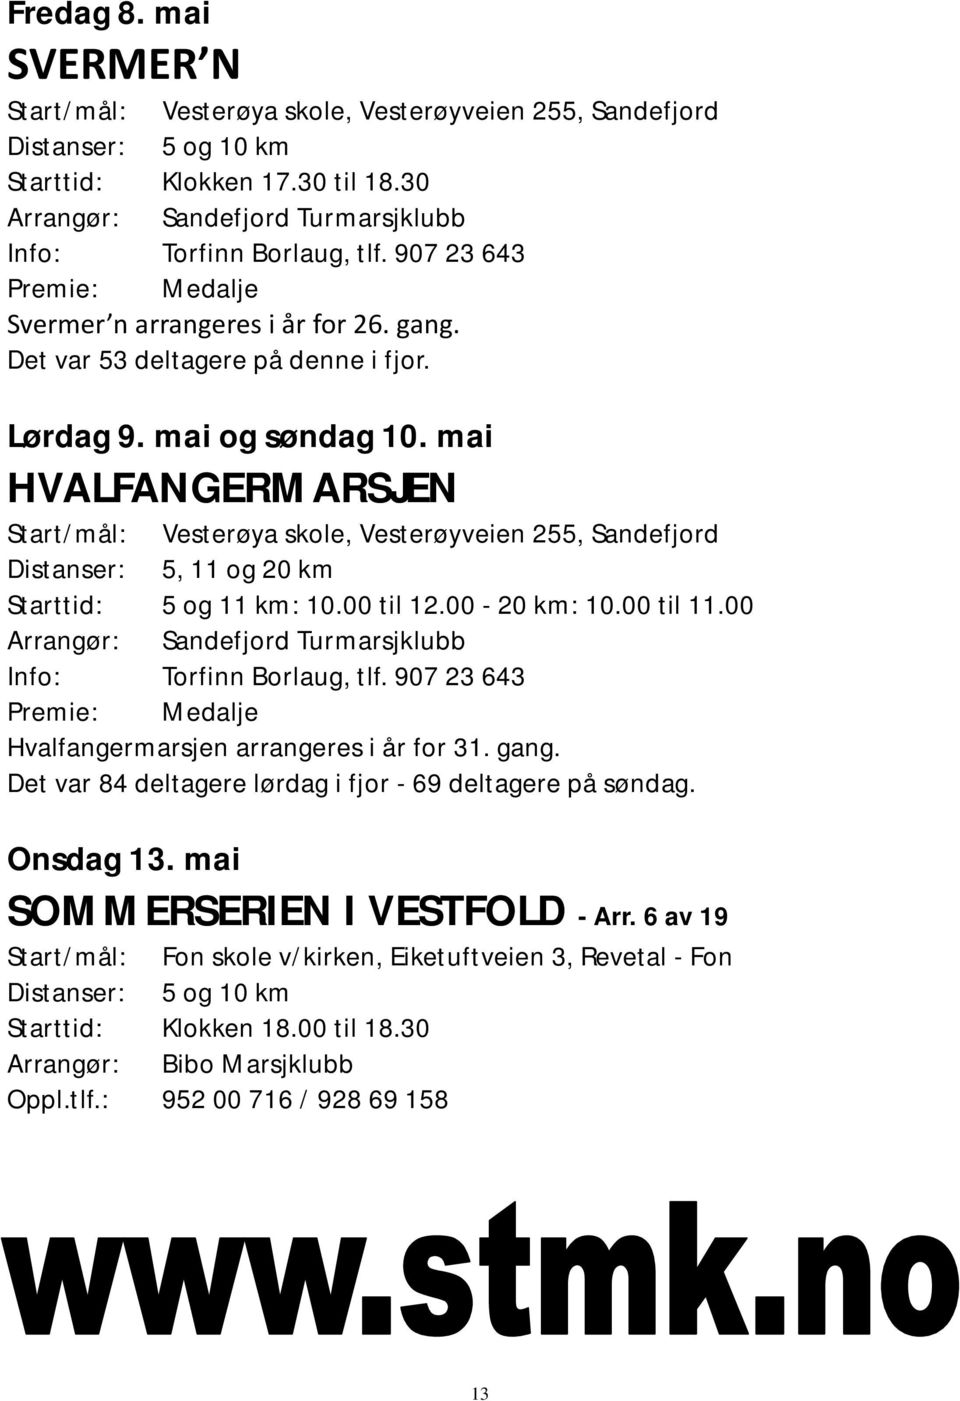 mai HVALFANGERMARSJEN Start/mål: Vesterøya skole, Vesterøyveien 255, Sandefjord Distanser: 5, 11 og 20 km Starttid: 5 og 11 km: 10.00 til 12.00-20 km: 10.00 til 11.